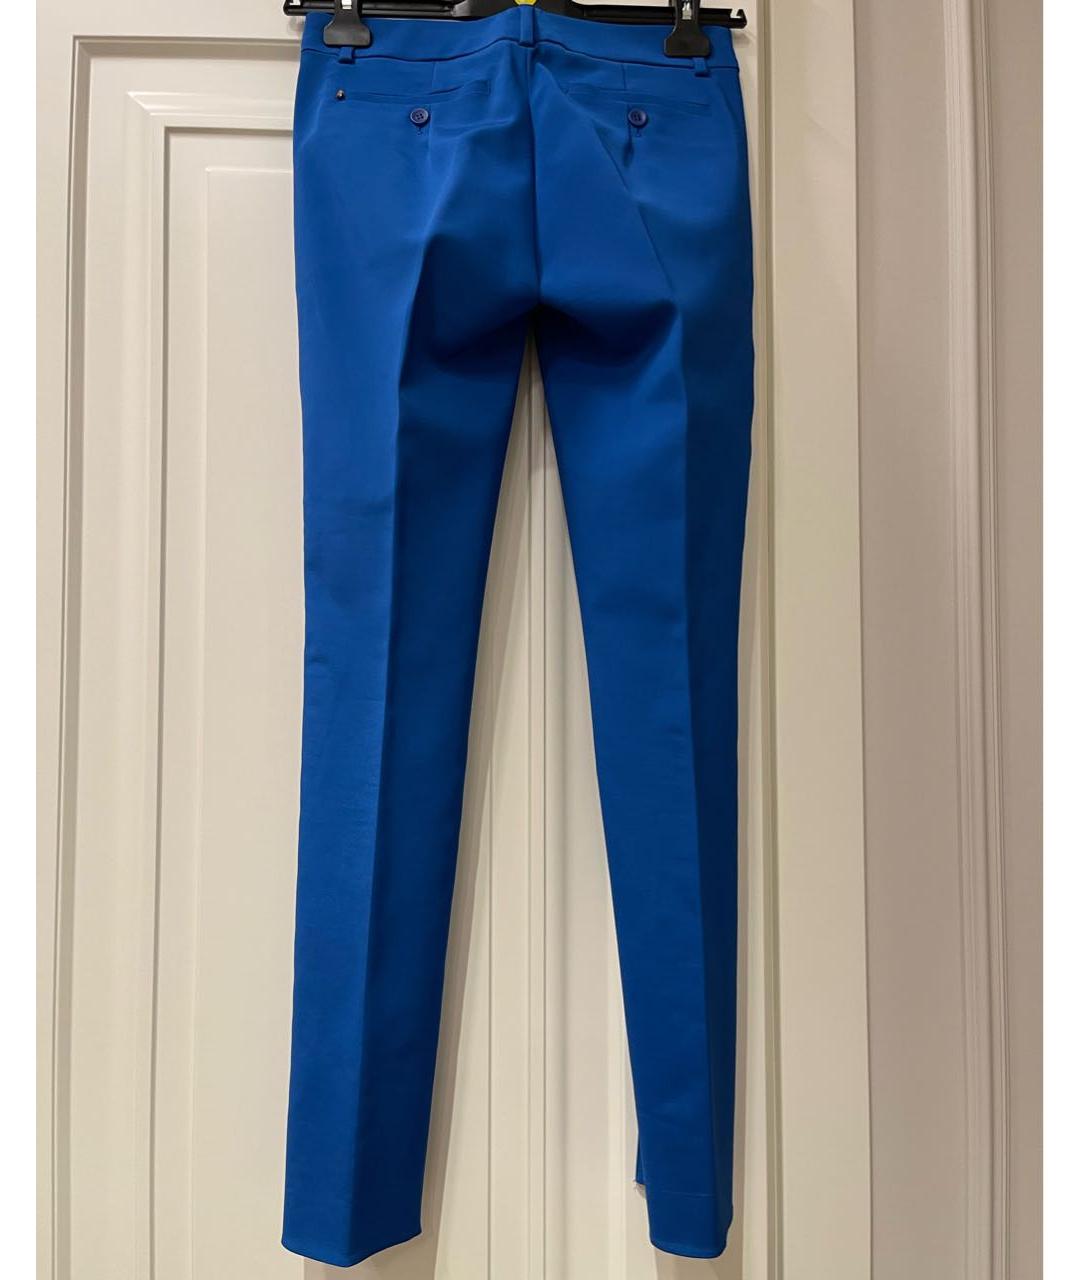 SPORTMAX Синие ацетатные брюки узкие, фото 2